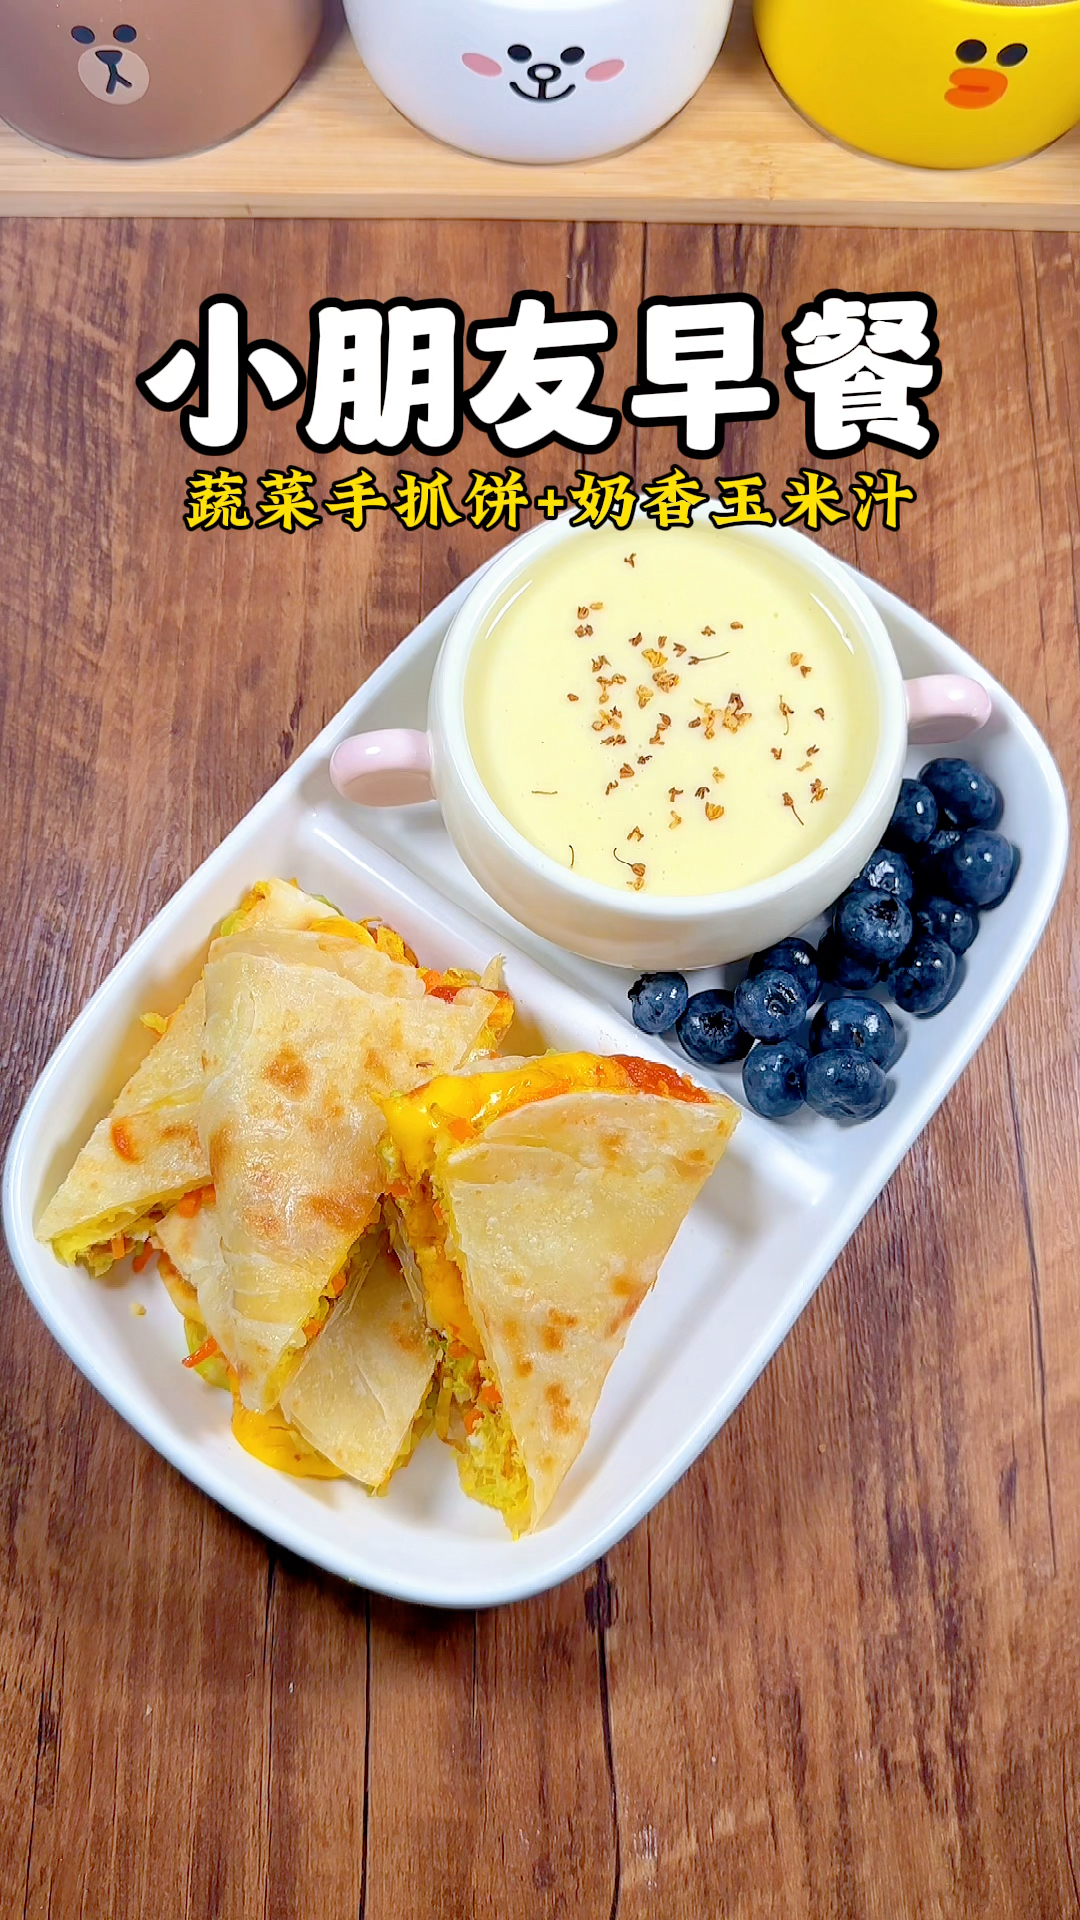 小朋友早餐：蔬菜手抓饼+奶香玉米汁